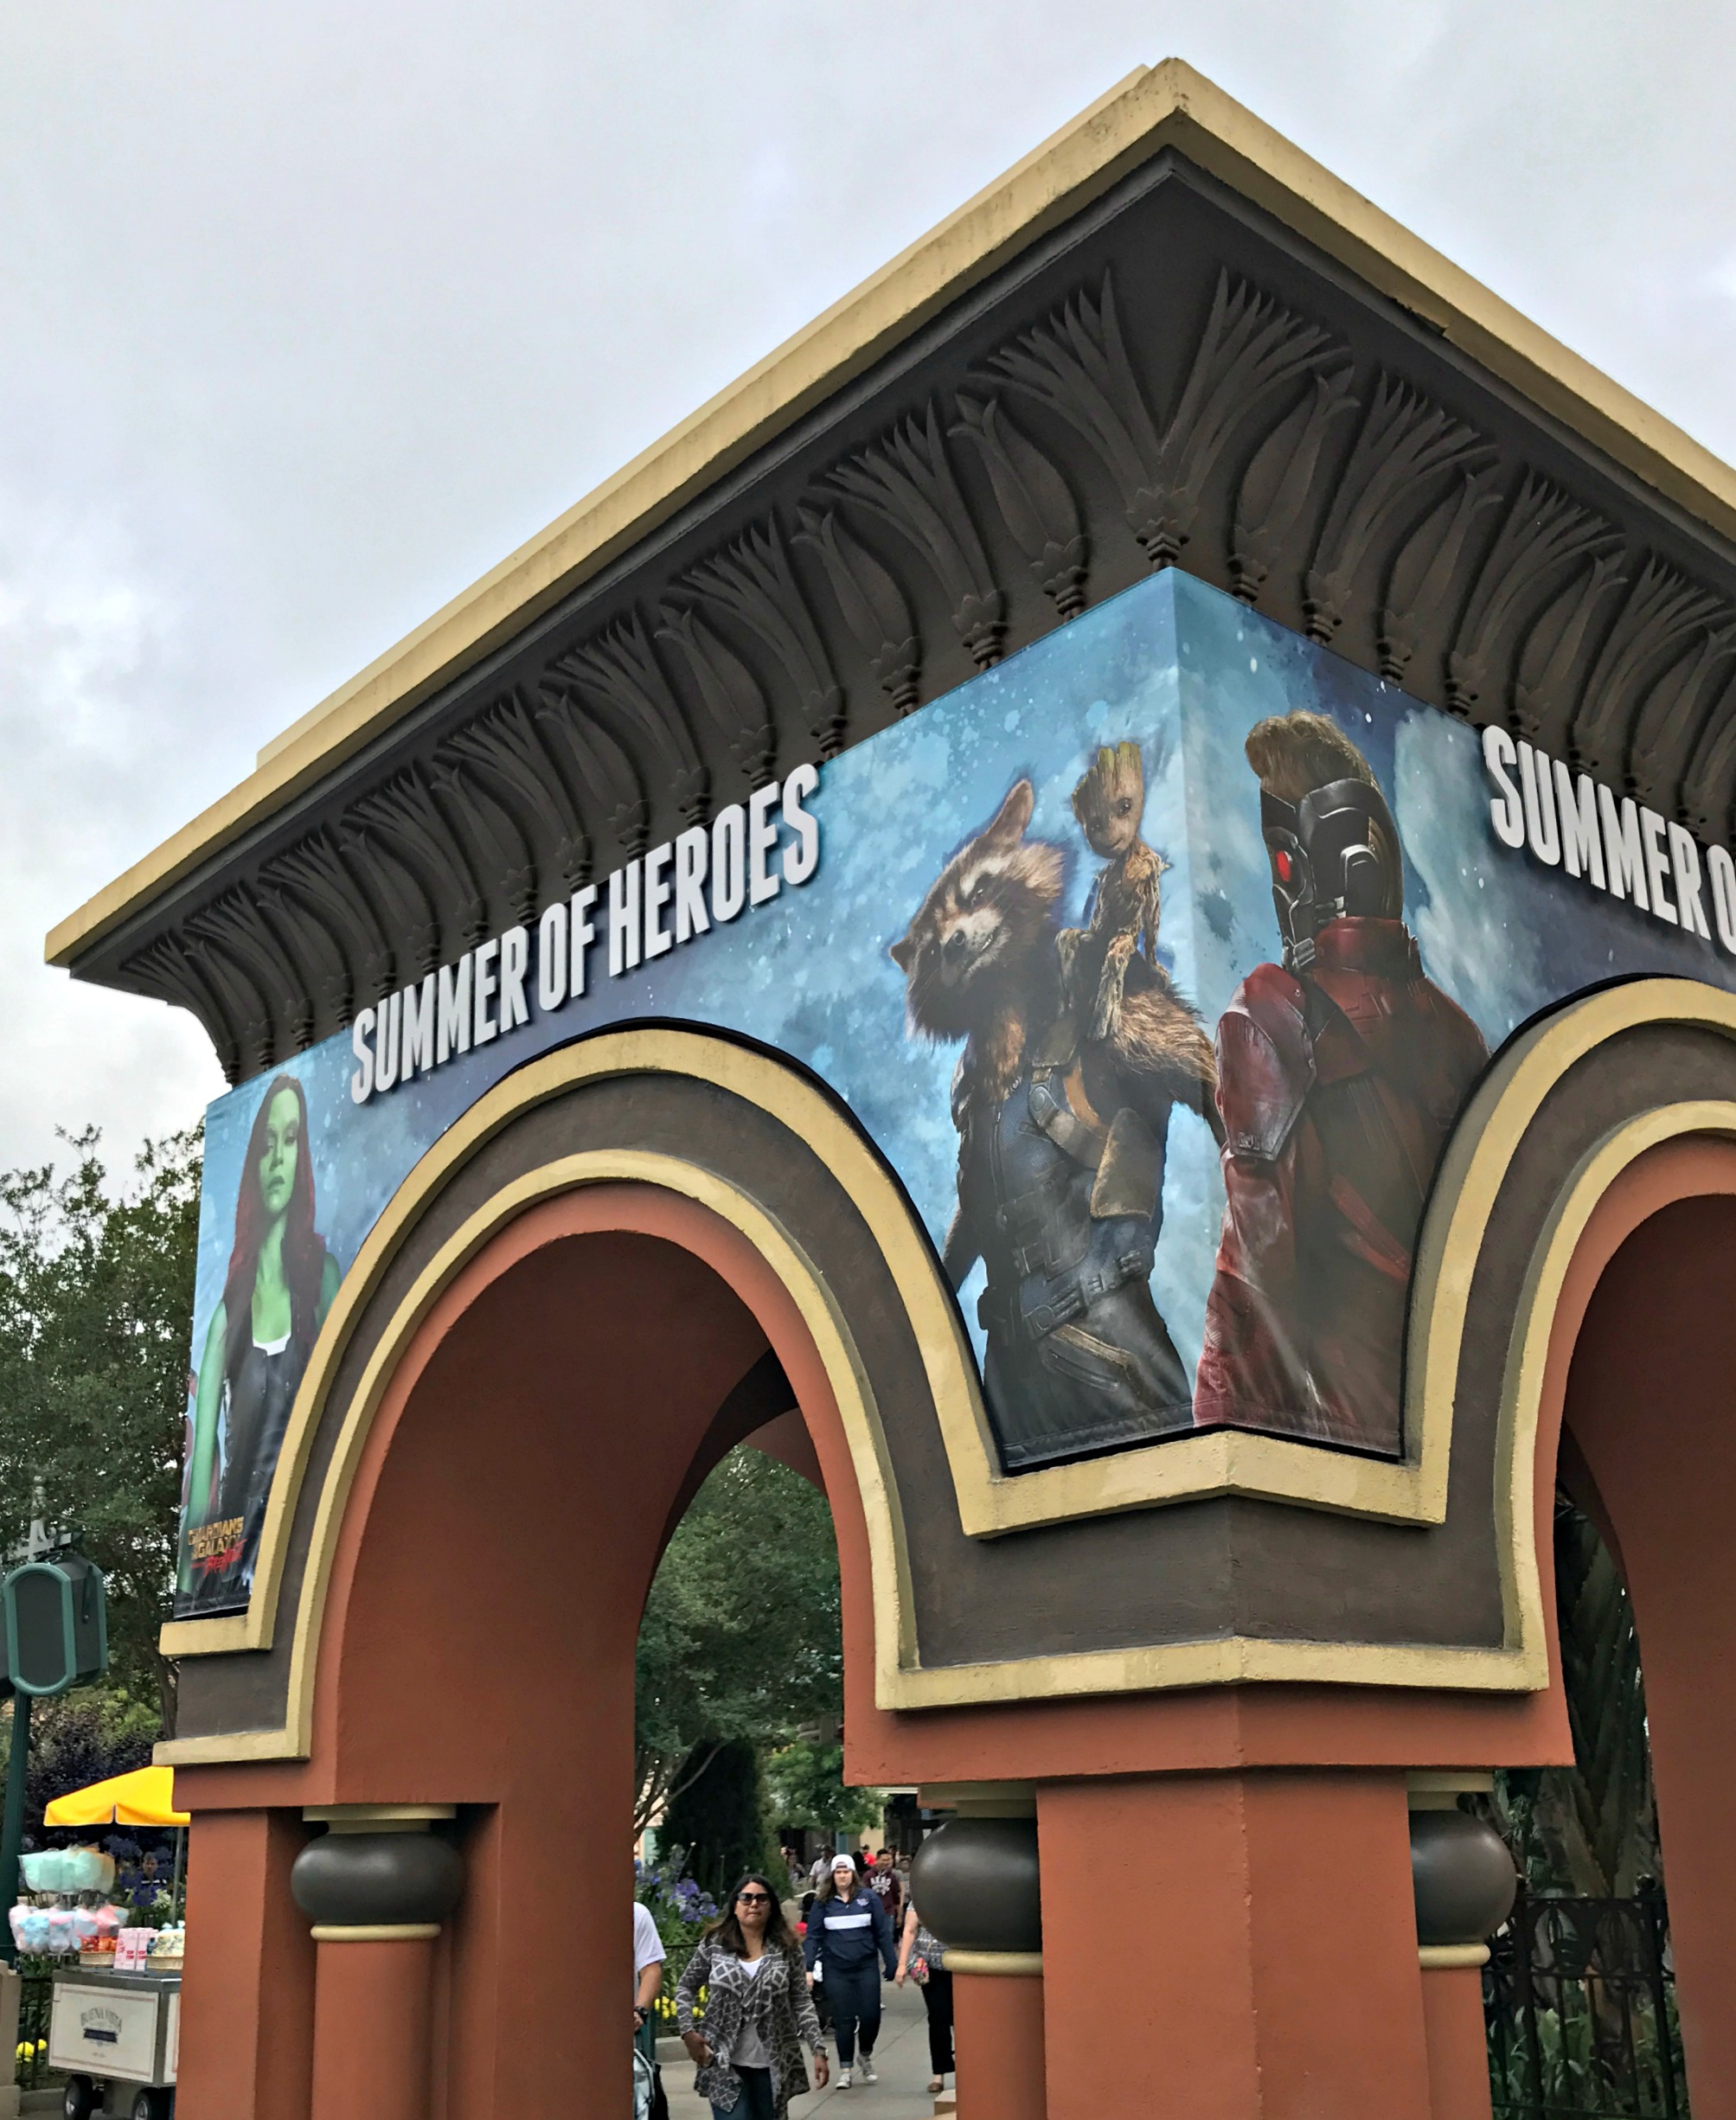 Disneyland Summer of Heroes